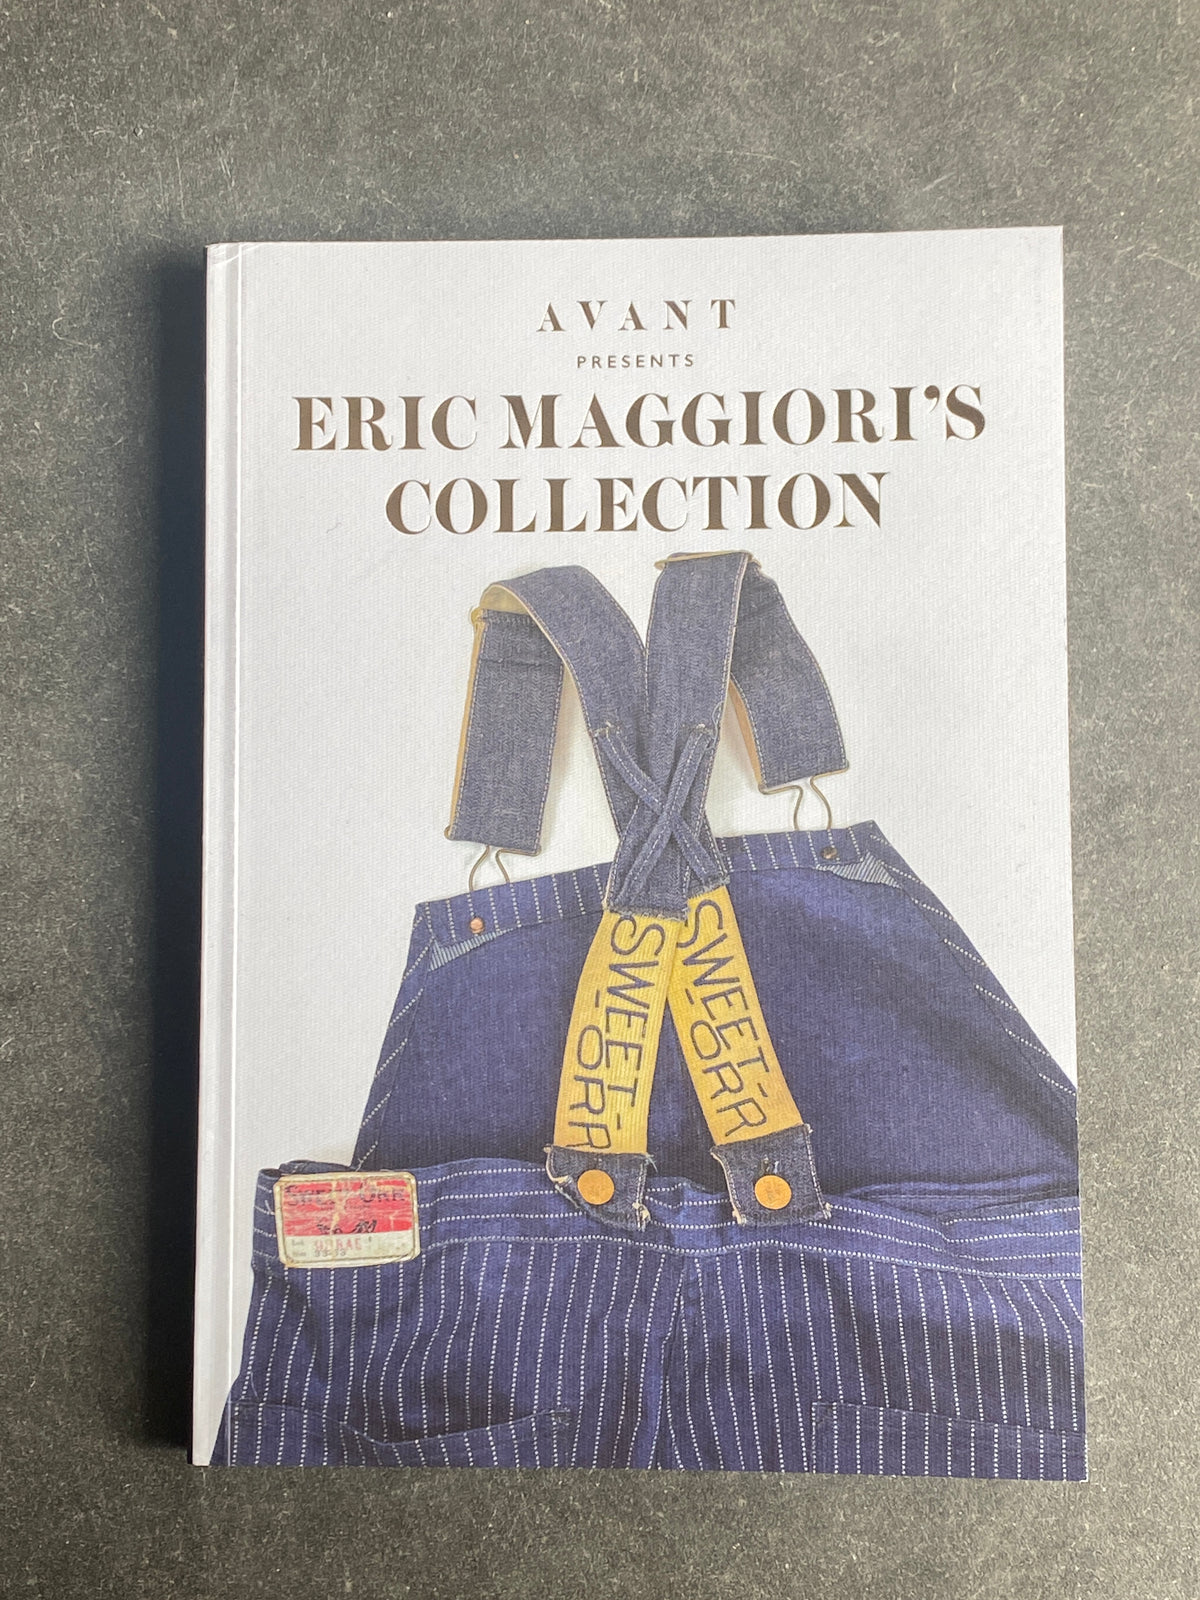 AVANT presents Eric Maggiori's Collection